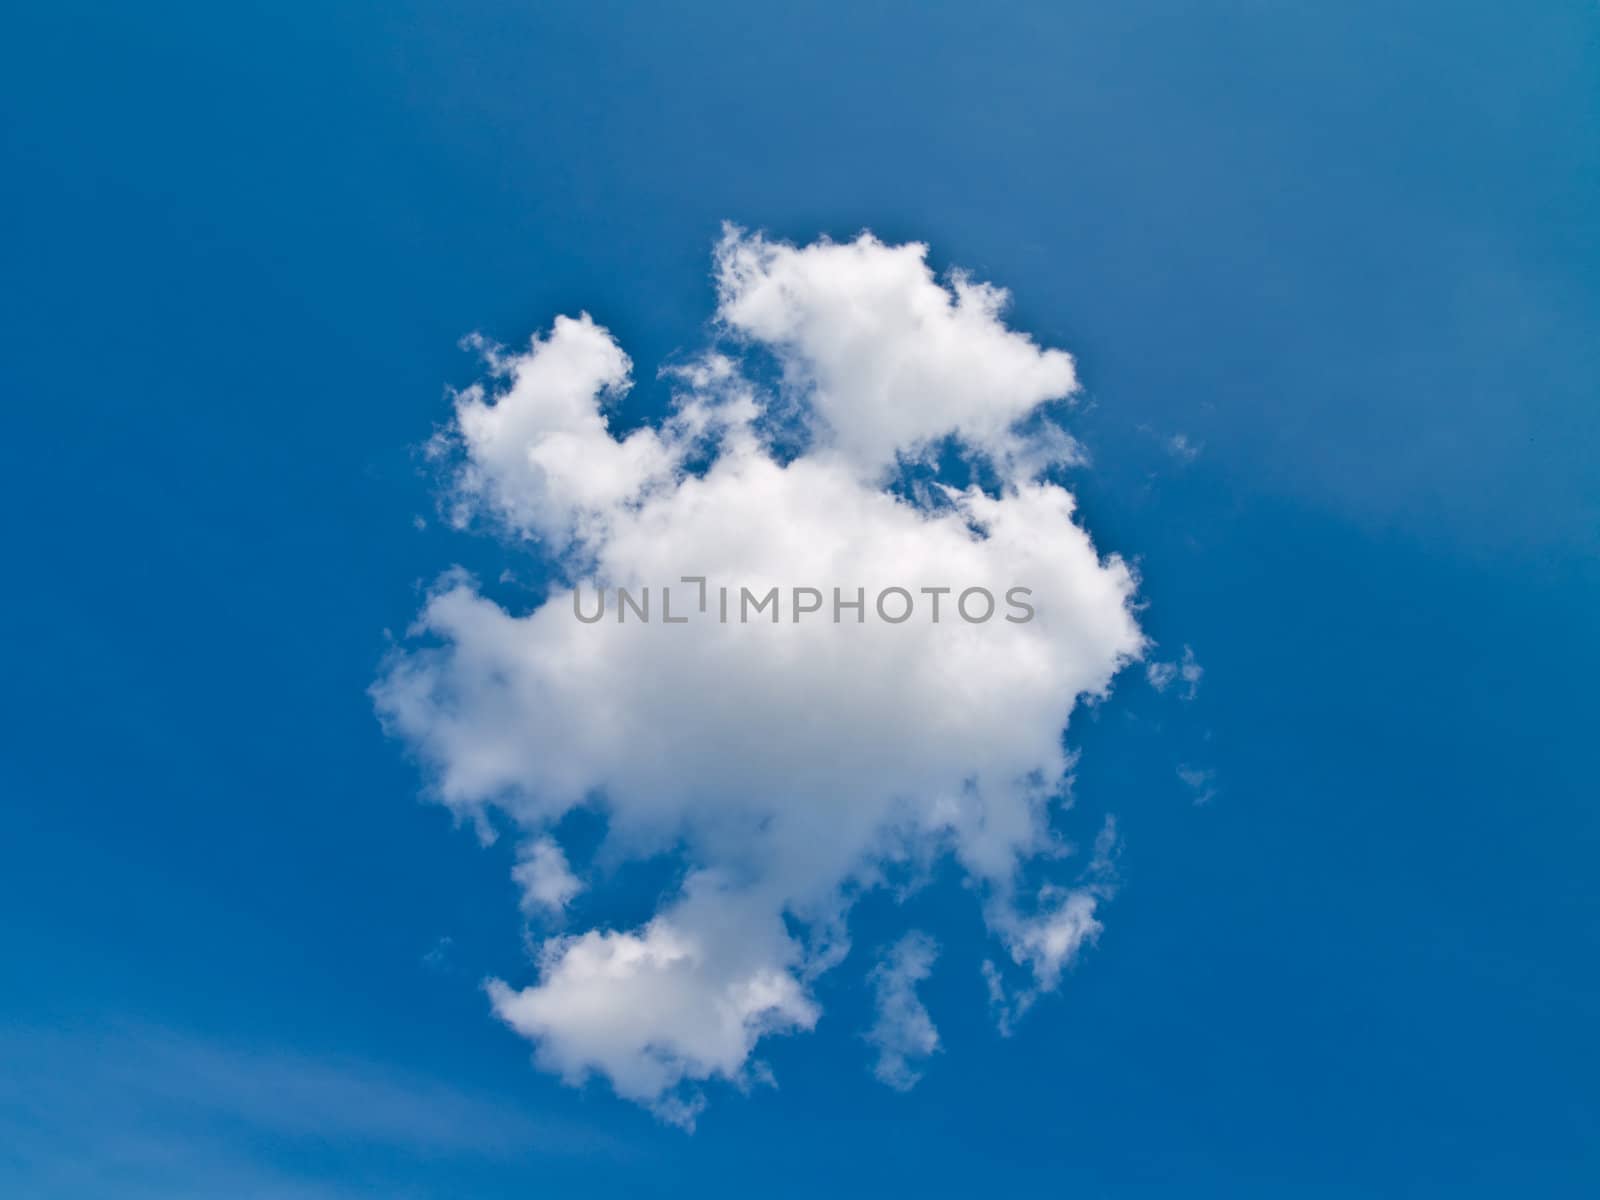 Cloud on sky by Auddmin